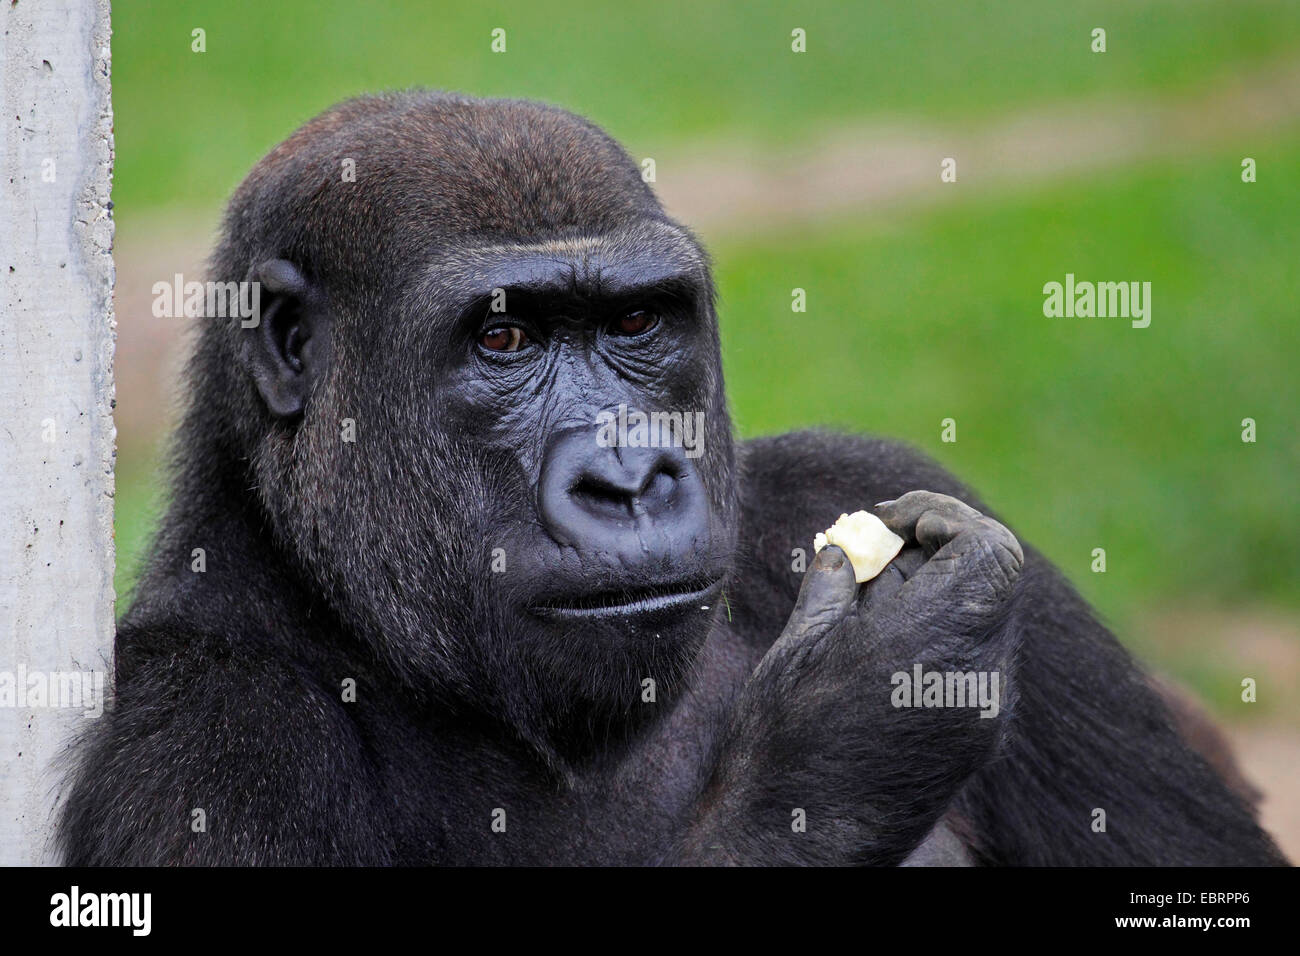 lowland gorilla (Gorilla gorilla gorilla), female eating thoughtfully fruit Stock Photo